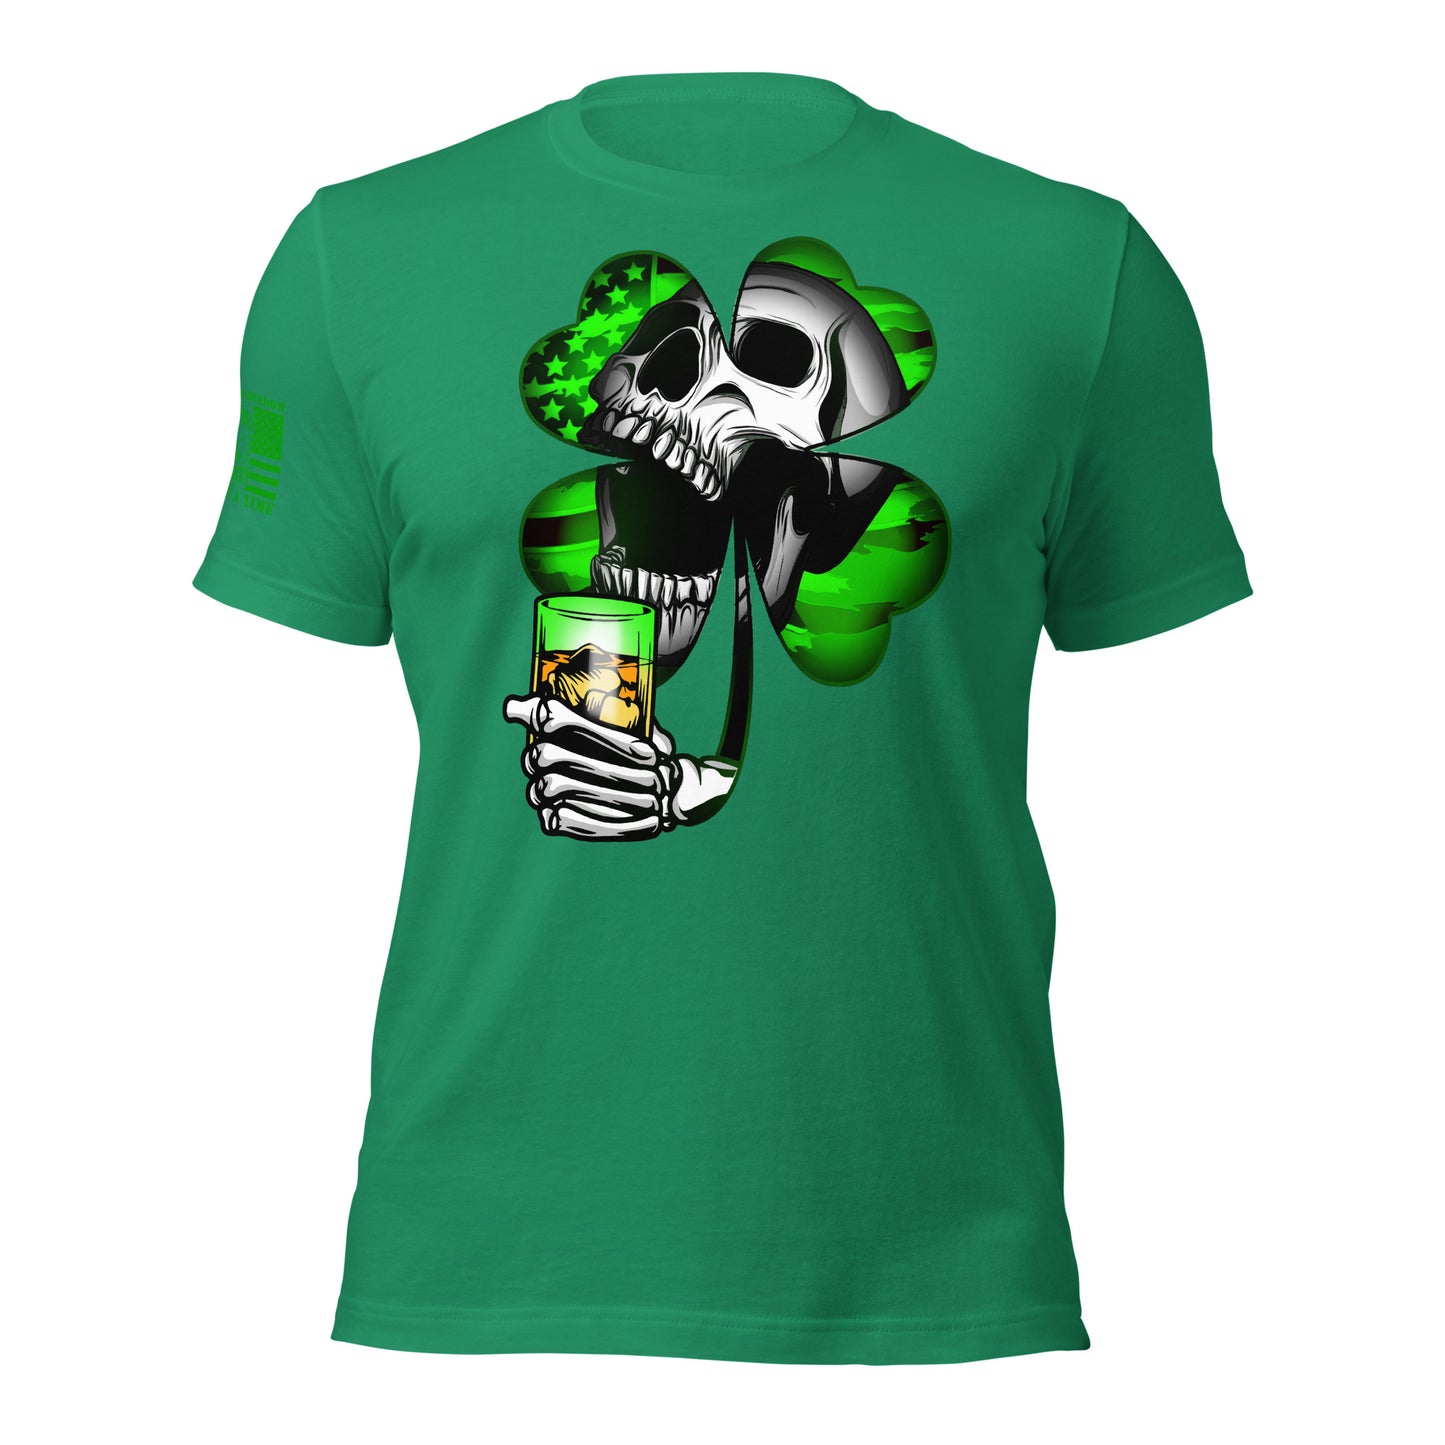 St. Patricks Day T-shirt